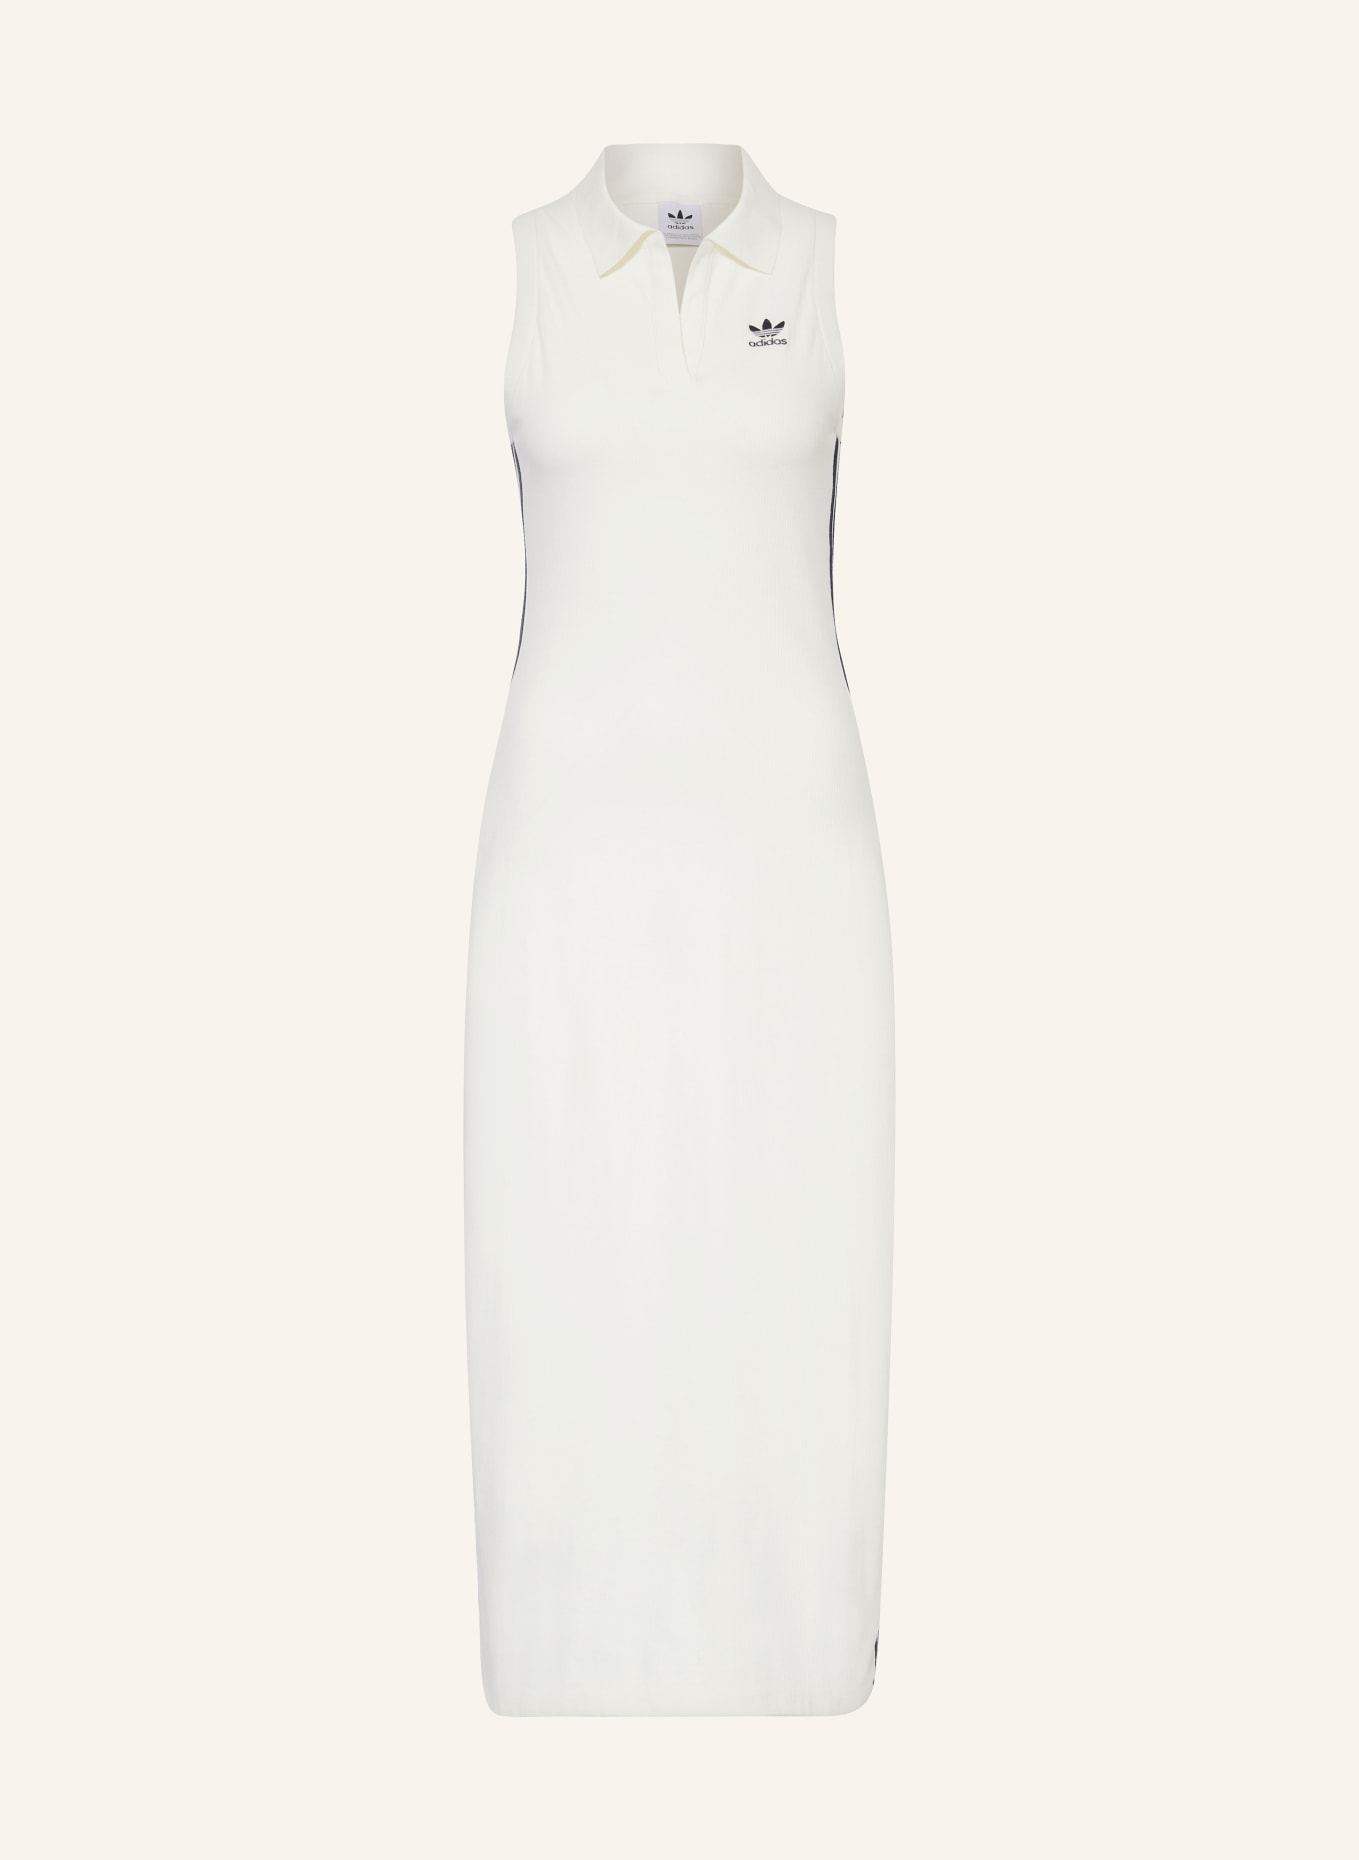 adidas Originals Jersey polo dress PREMIUM ORIGINALS, Color: WHITE (Image 1)